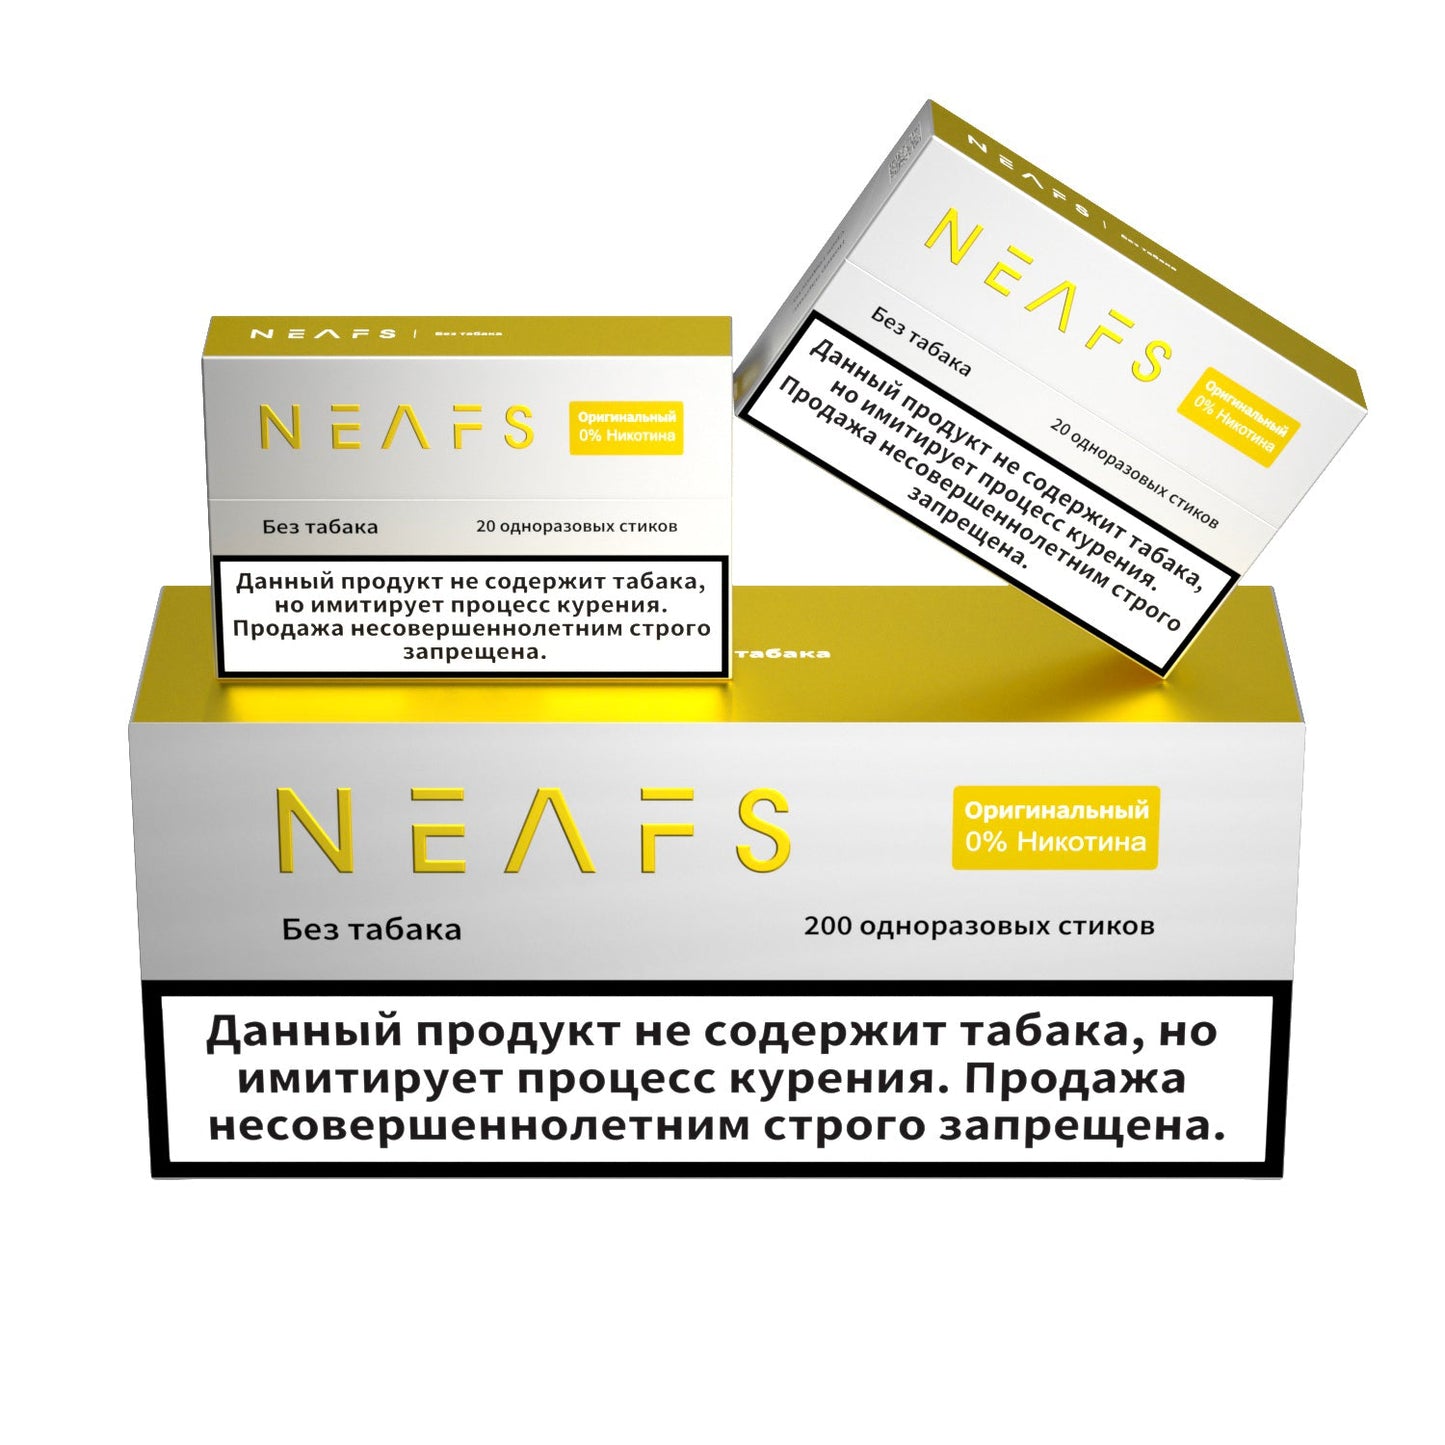 Безникотиновые стики NEAFS Оригинал 0% – 200 стиков